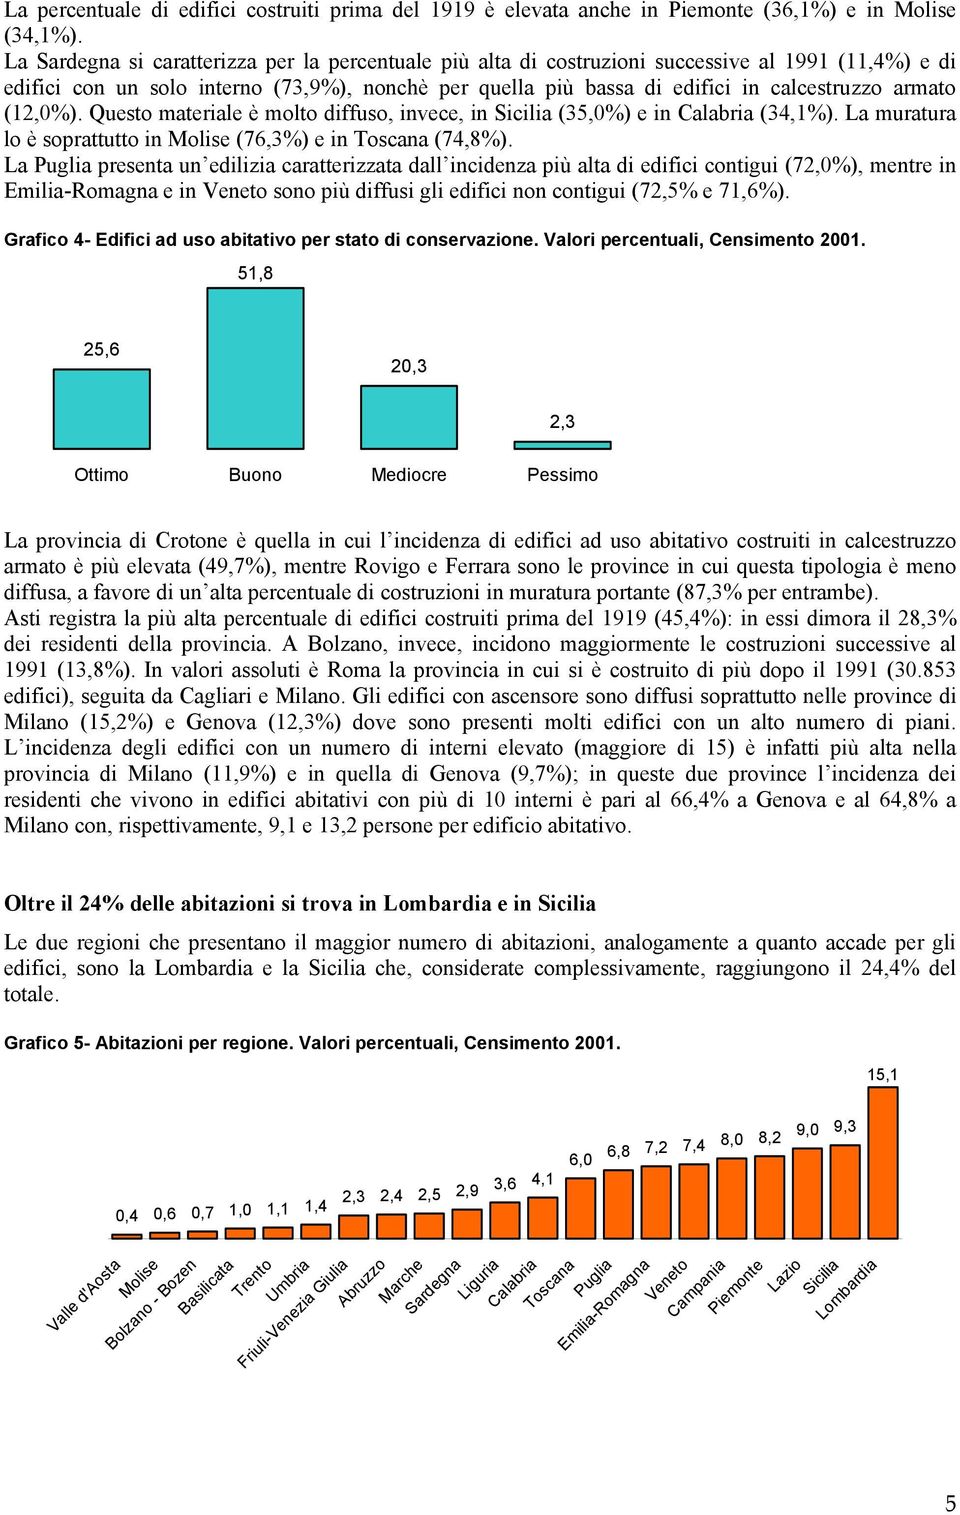 armato (12,0%). Questo materiale è molto diffuso, invece, in Sicilia (35,0%) e in Calabria (34,1%). La muratura lo è soprattutto in Molise (76,3%) e in Toscana (74,8%).